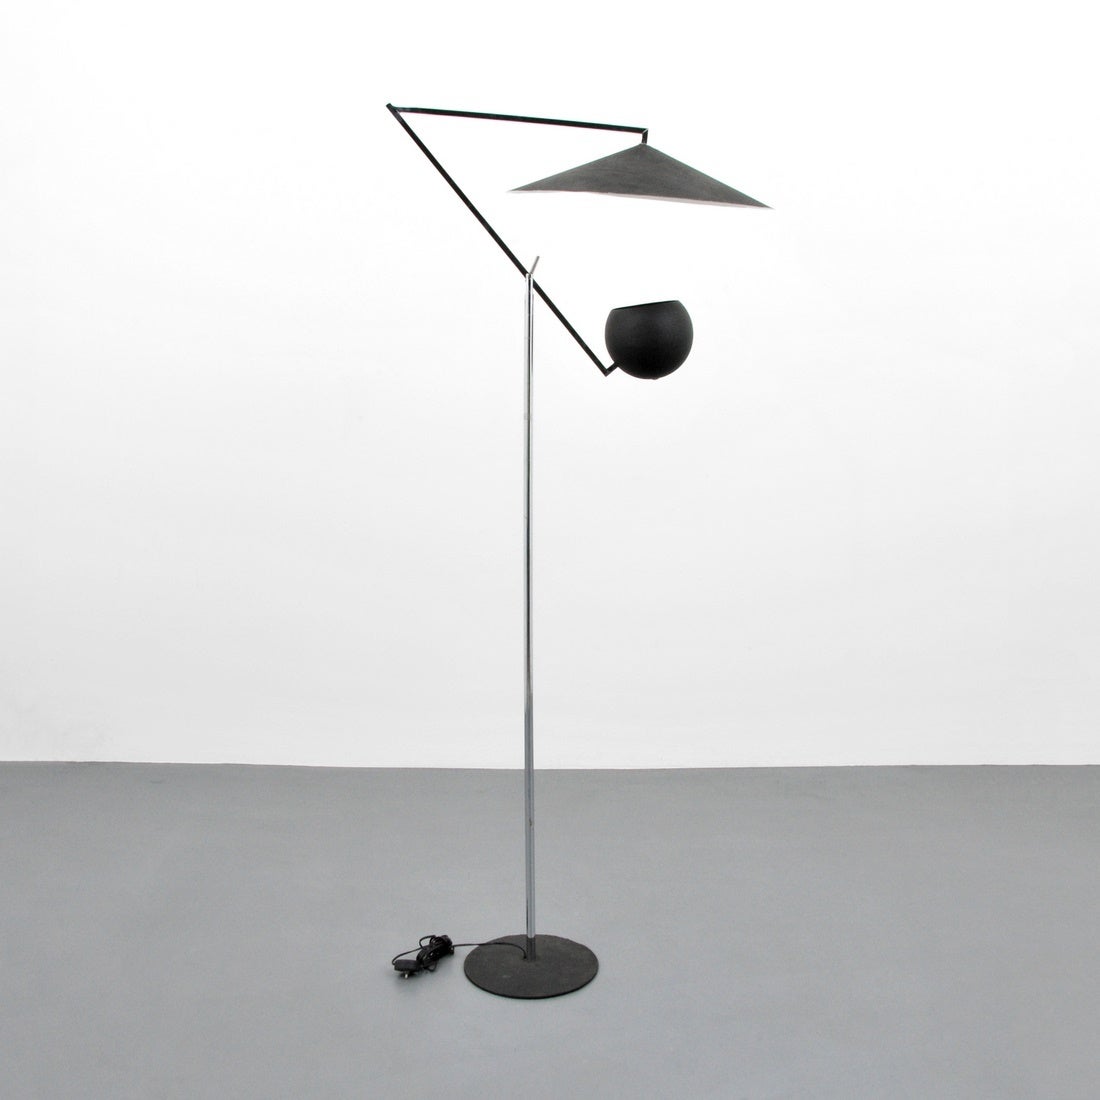 Floor lamp with adjustable or tilt head by Robert Sonneman, USA, 1960s.